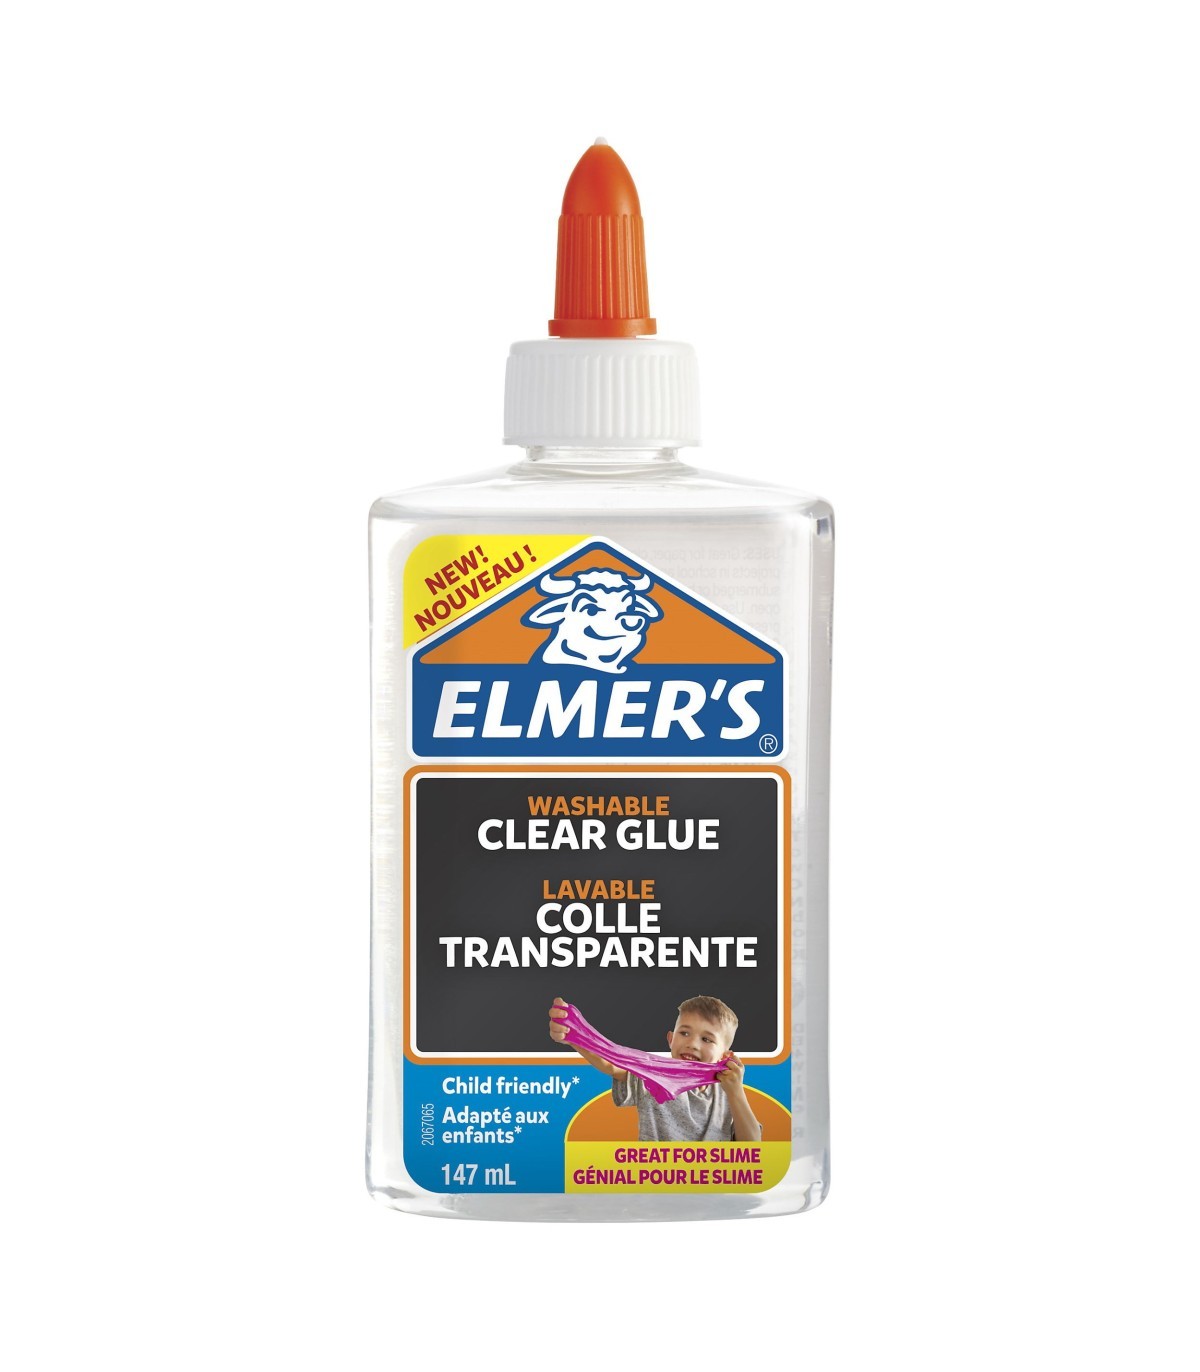 Elmer's colle liquide transparente, lavable et adaptée aux enfants, pour  travaux manuels ou slime, 147 ml